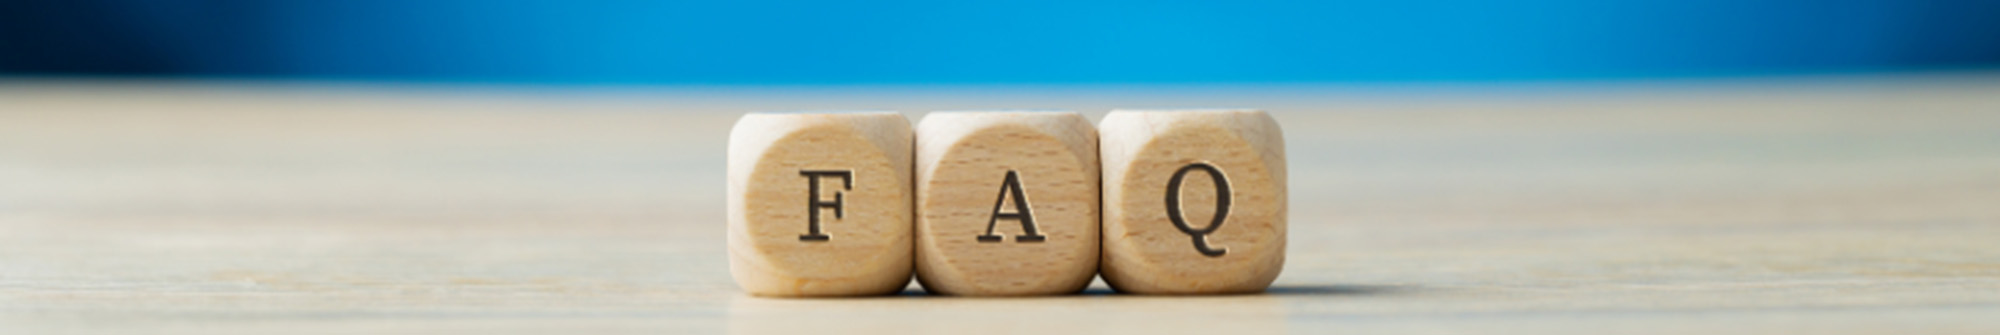 Wooden blocks spelling FAQ